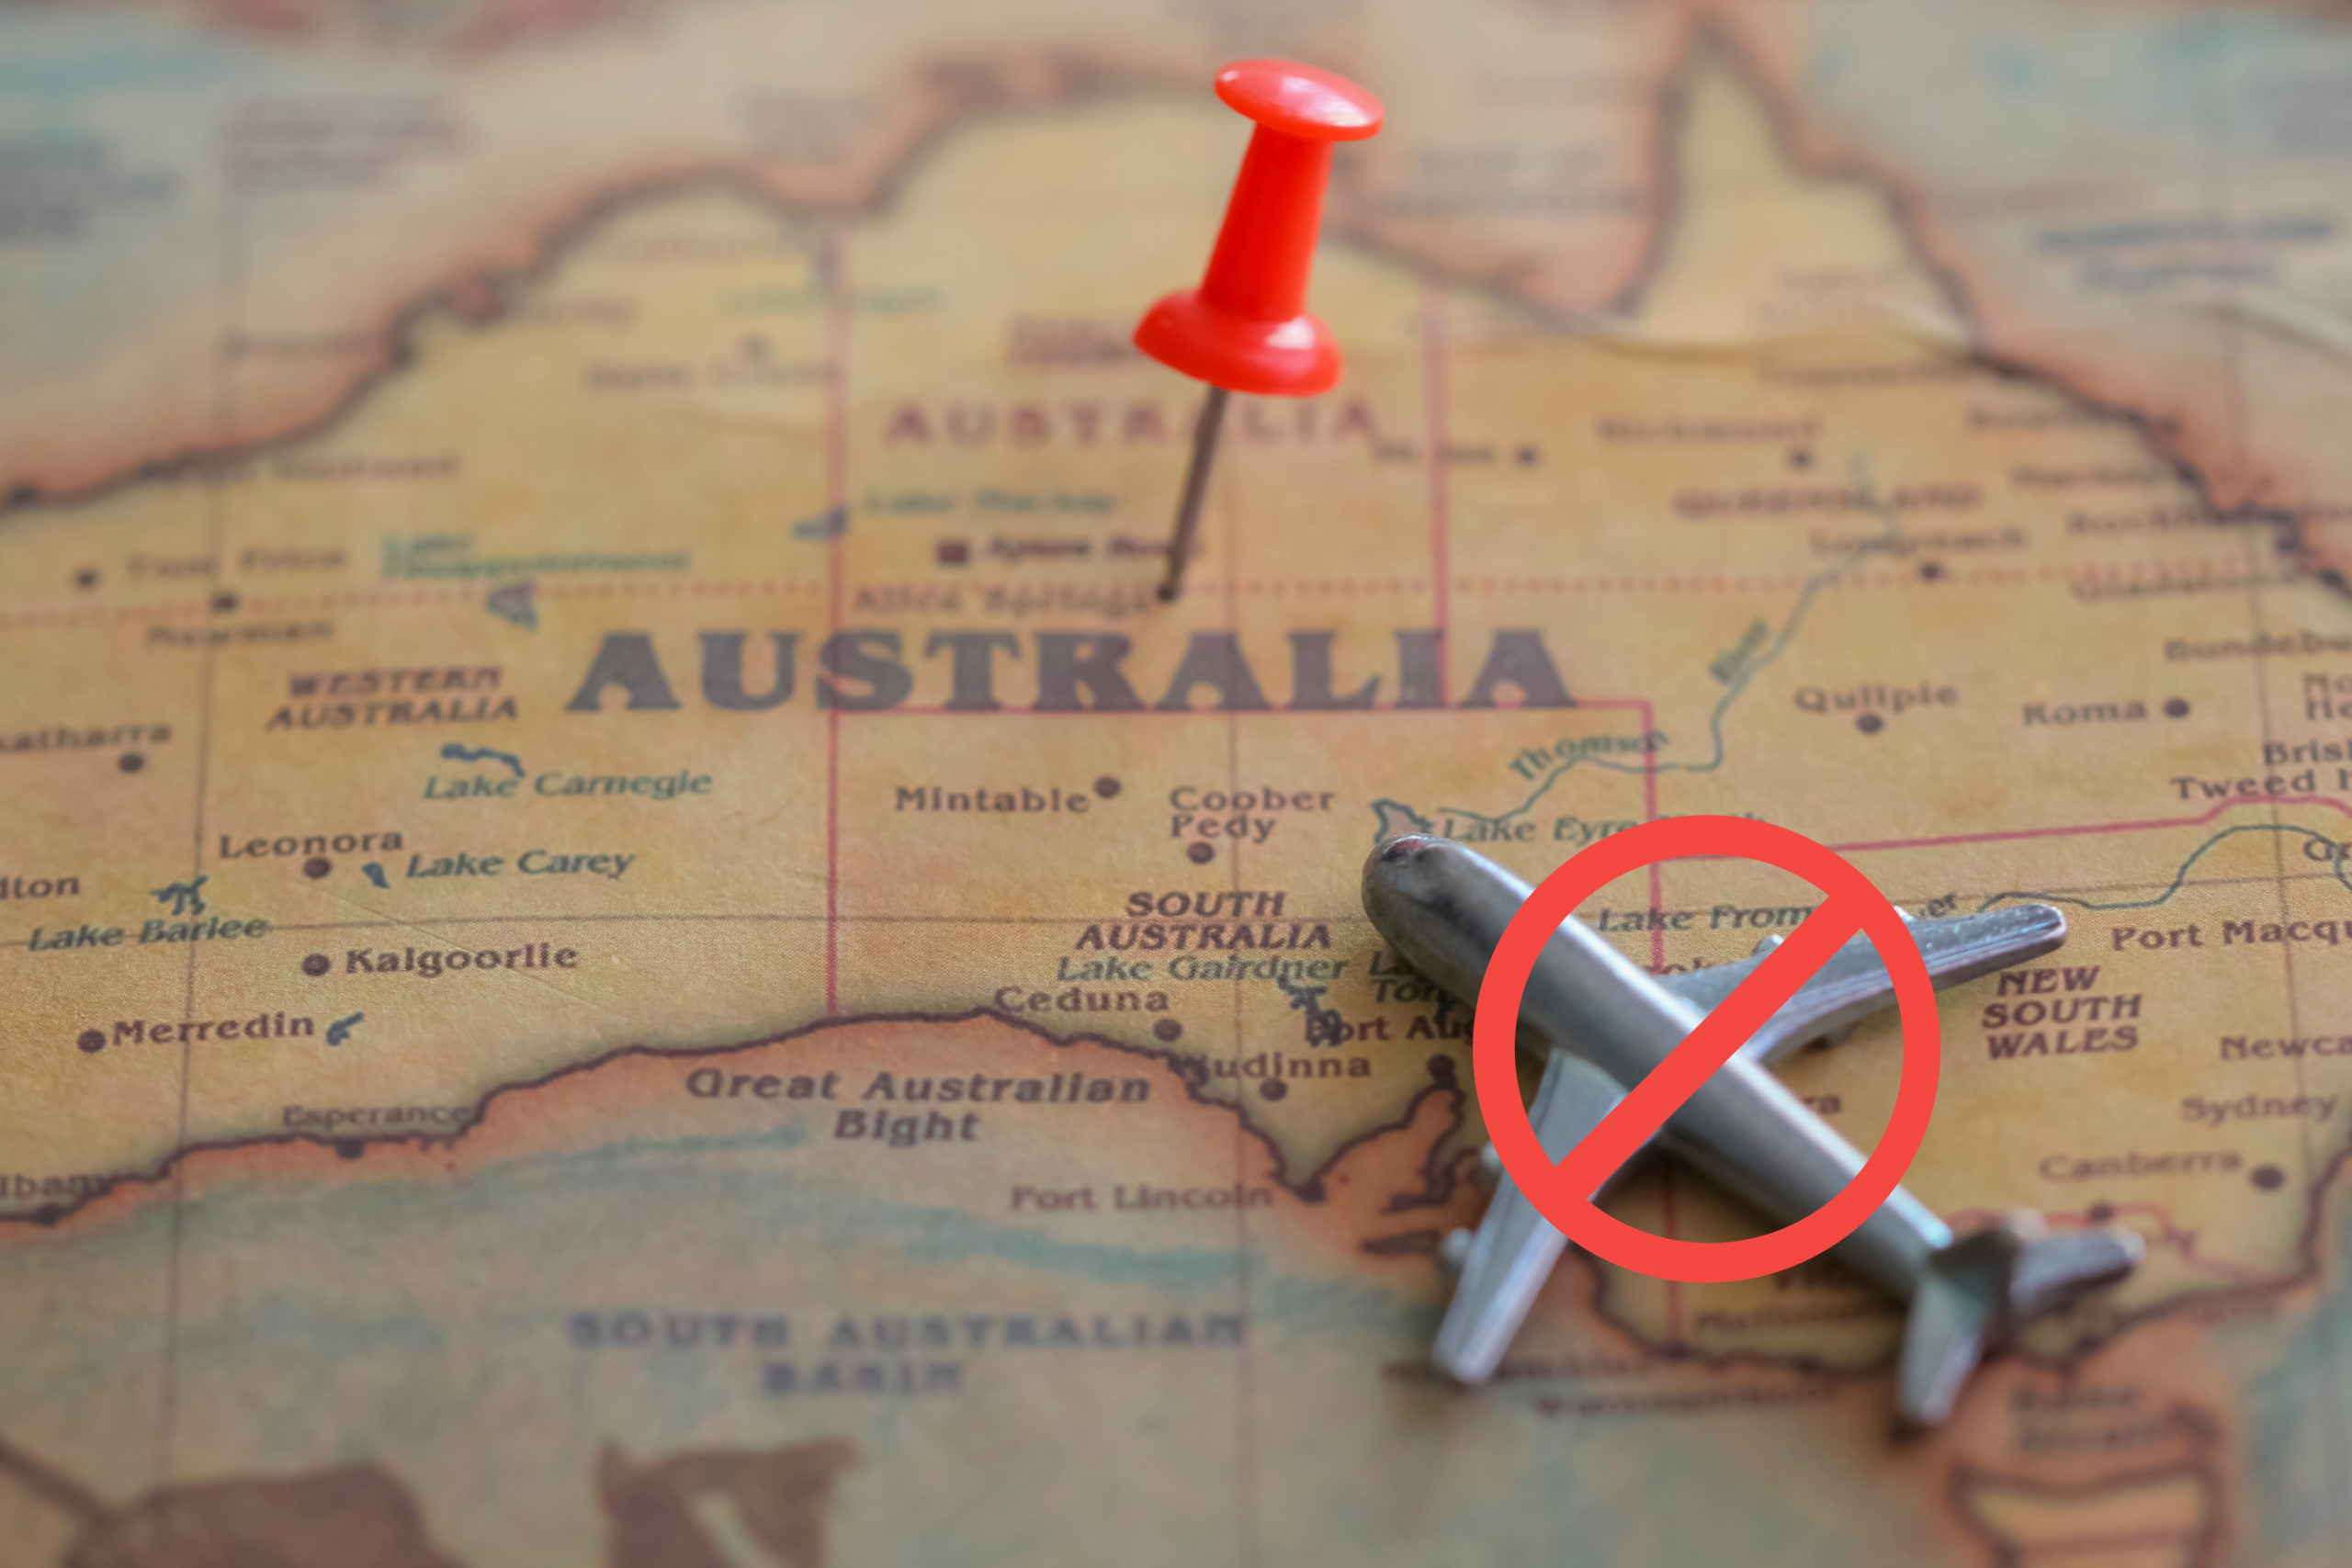 travel restrictions sydney australia